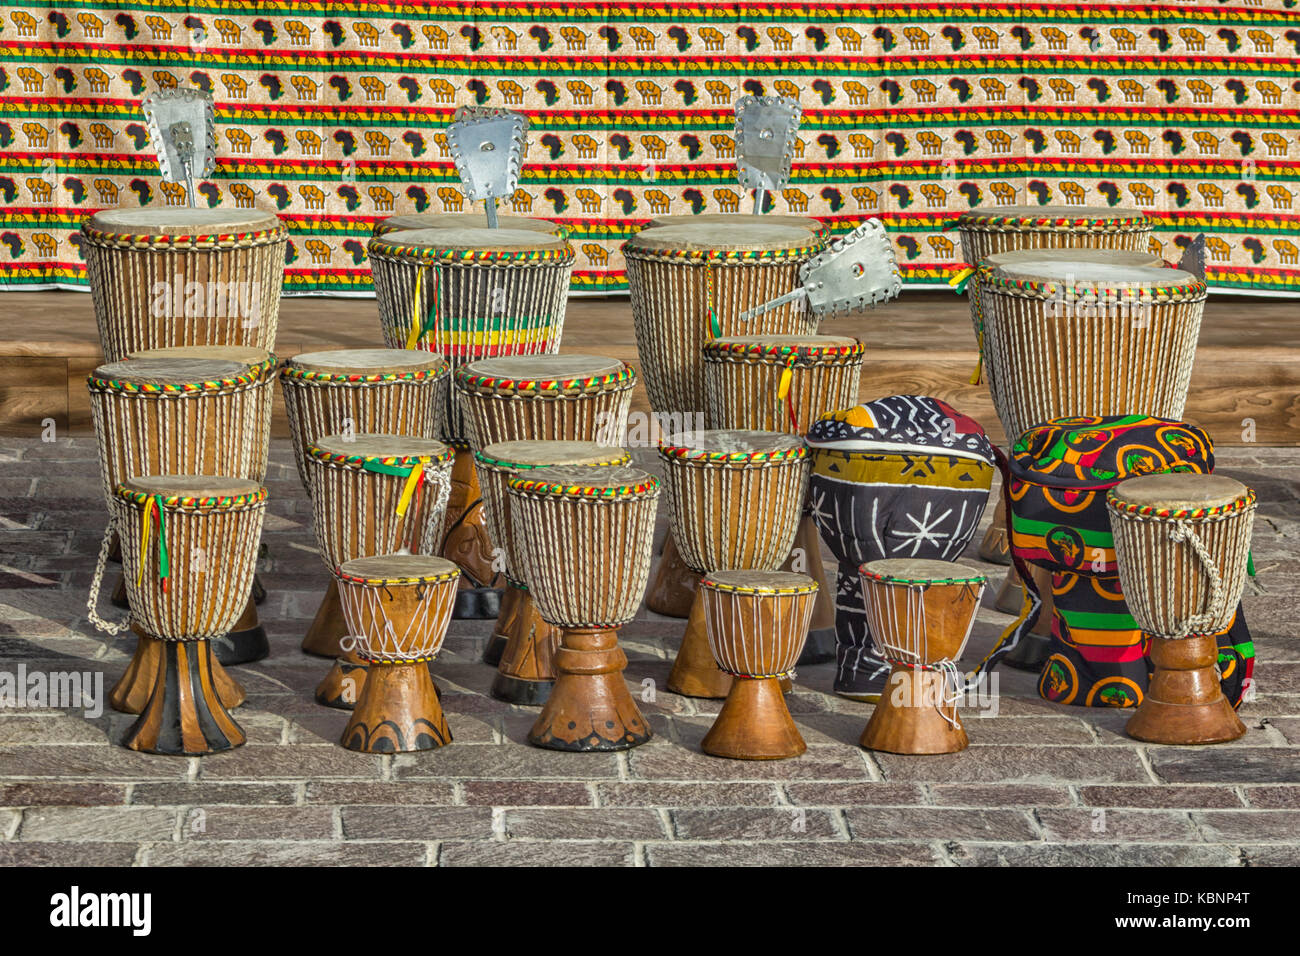 Tambours africains faits à la main, y compris les tambours africains de Shekere (l'instrument de percussion africain de Shekere du Ghana). Également connu sous le nom d'Axatse). Banque D'Images